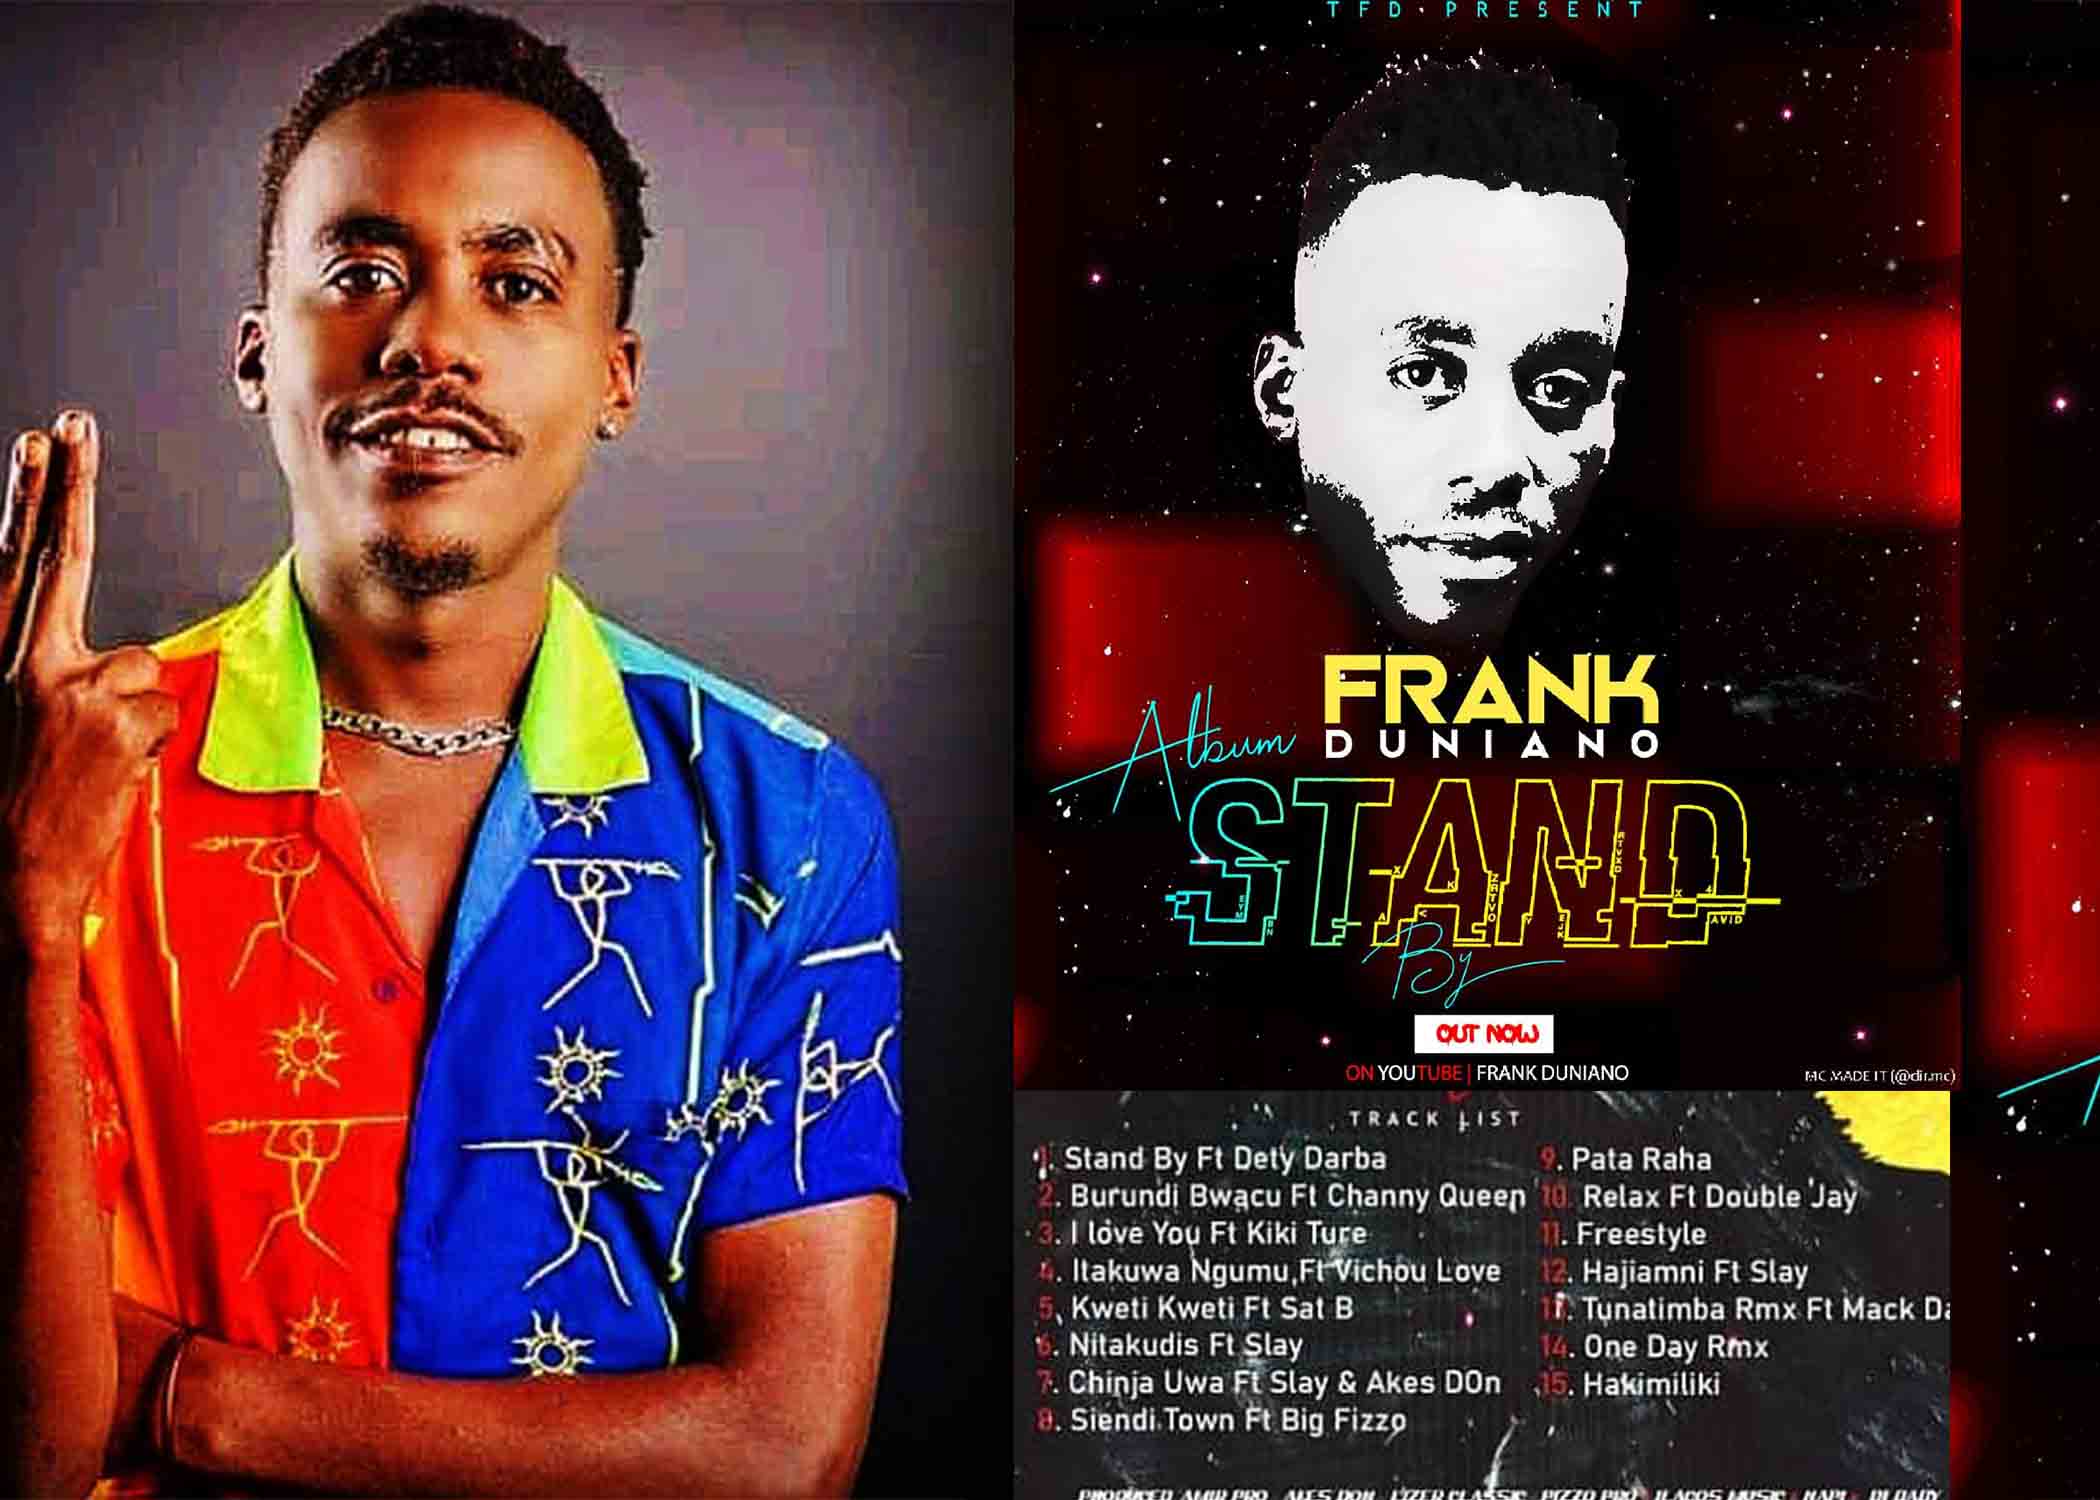 Album ya Frank Duniano Abaririmvyi Big Fizzo na Sat B baririmba mwo